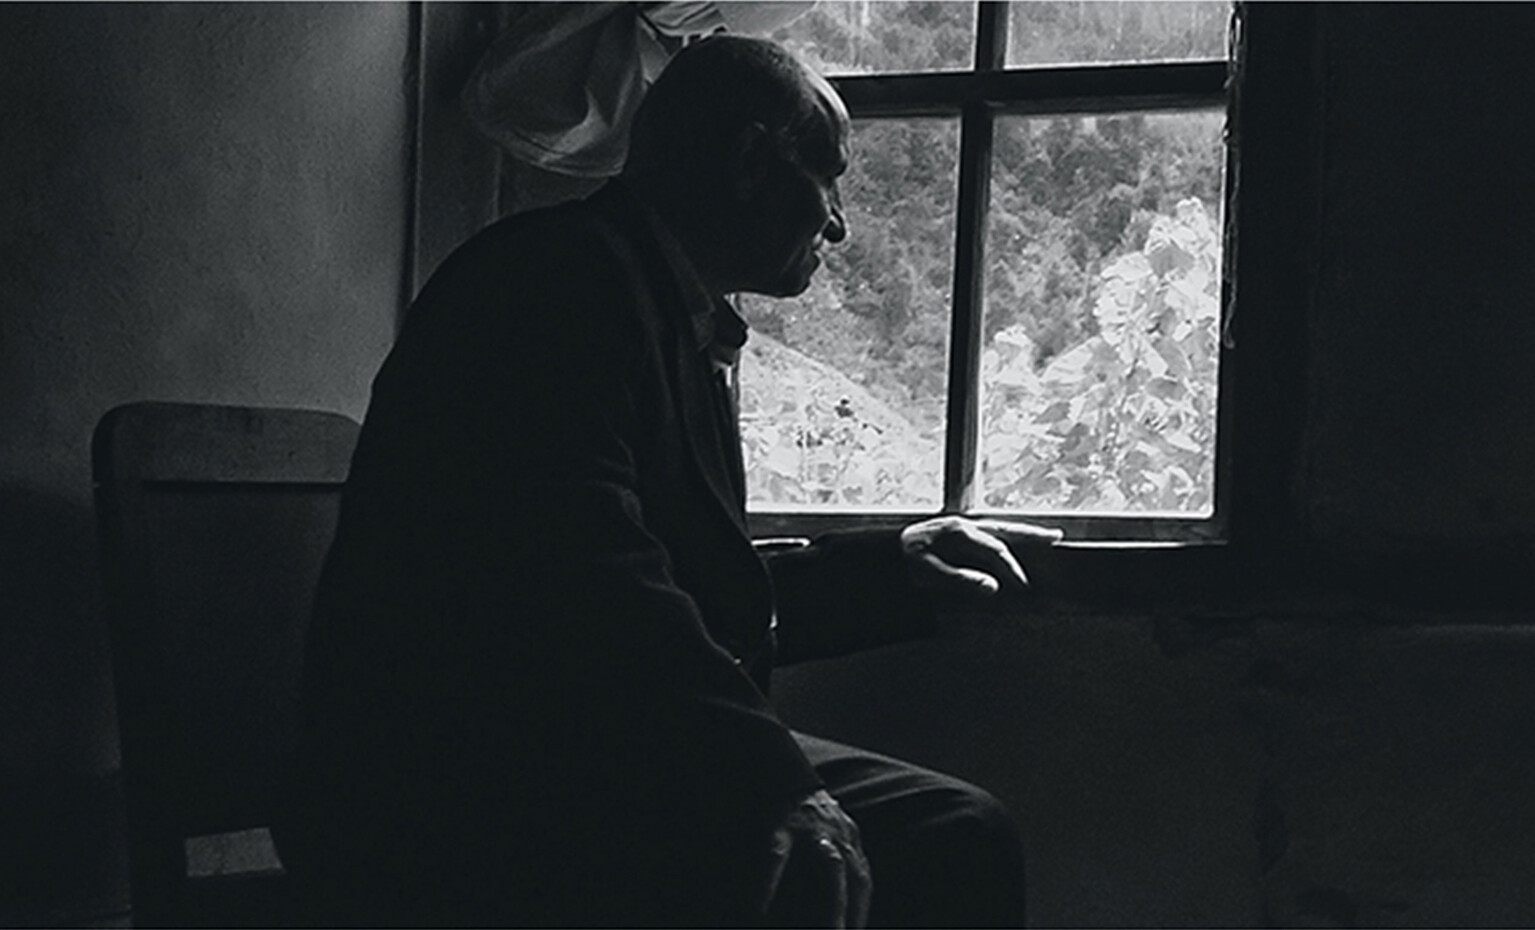 Schwarz-weiß Fotografie eines äteren Mannes, welcher aus dem Fenster blickt, in einem dunklen Eck eines Hauses. Seine Hand liegt auf dem Fenstersims, fast so, wie als wolle er Kontakt zu der Welt draußen aufbauen.